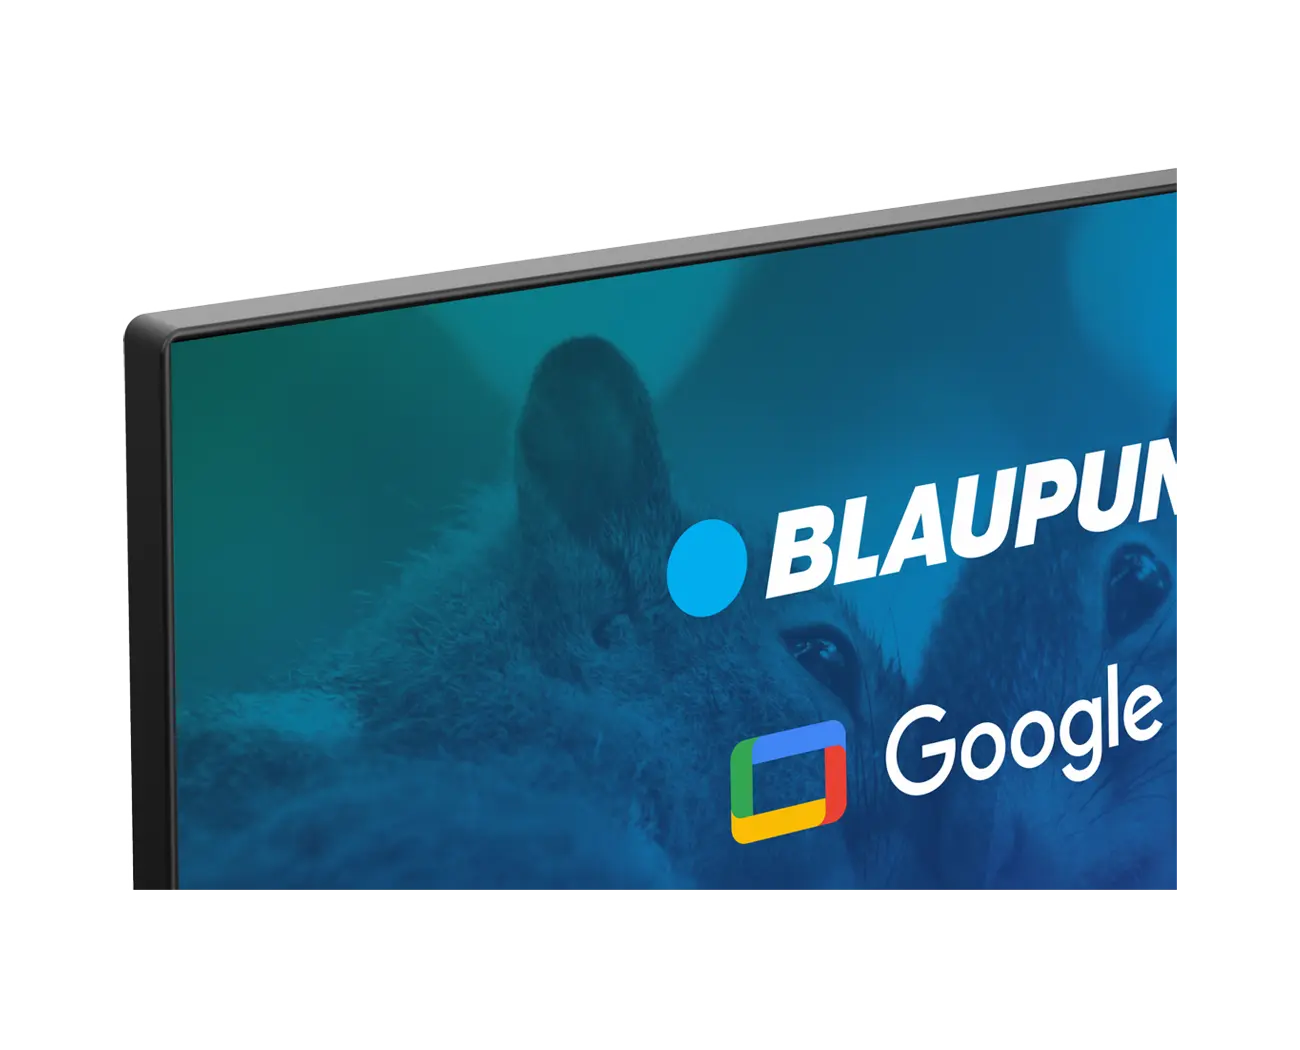 Full HD Google TV Blaupunkt 32FBG5000